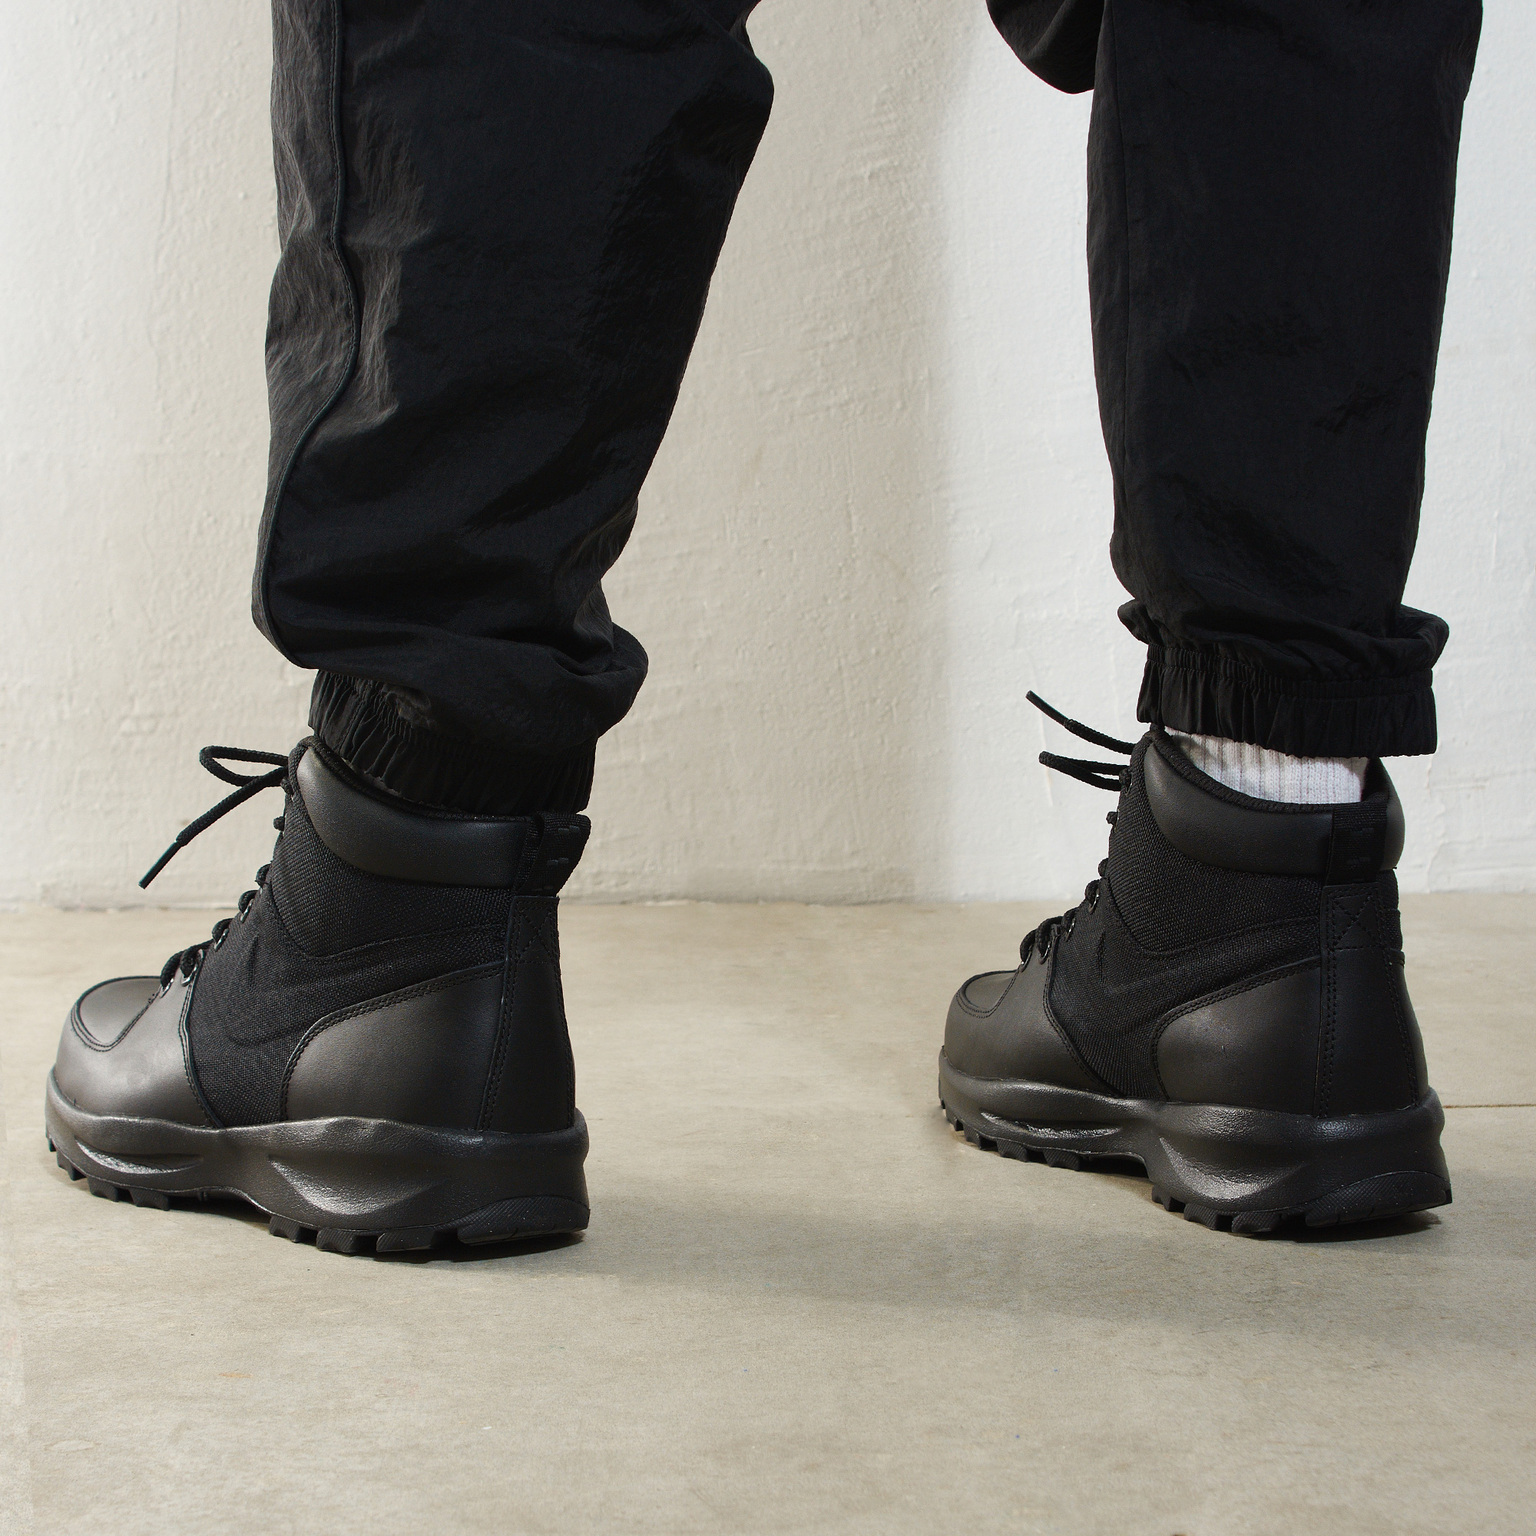 Ботинки утепленные Nike Manoa 456975-001